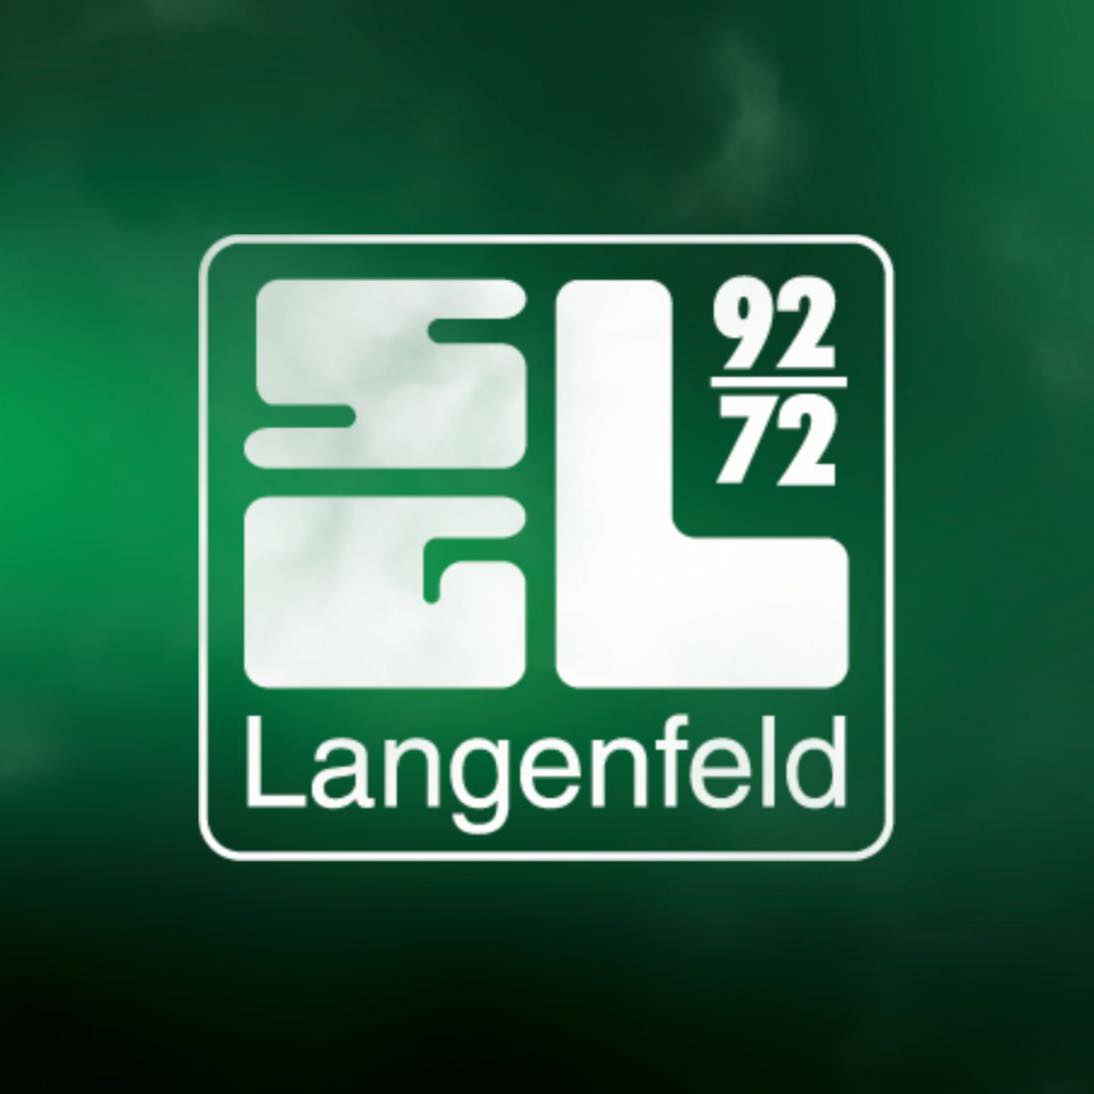 SG Langenfeld